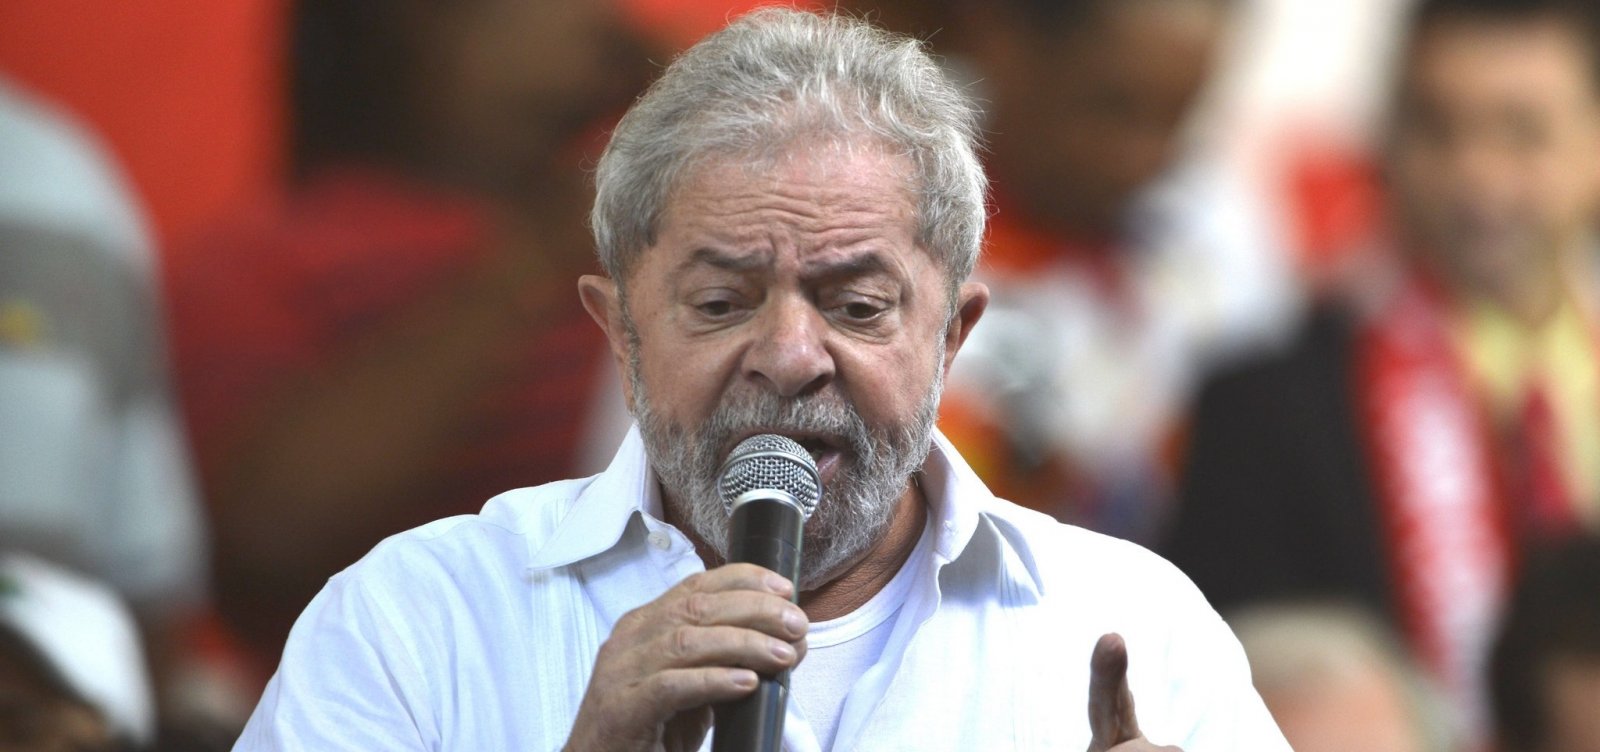 Defesa de Lula solicita que ex-presidente seja interrogado de novo em ação